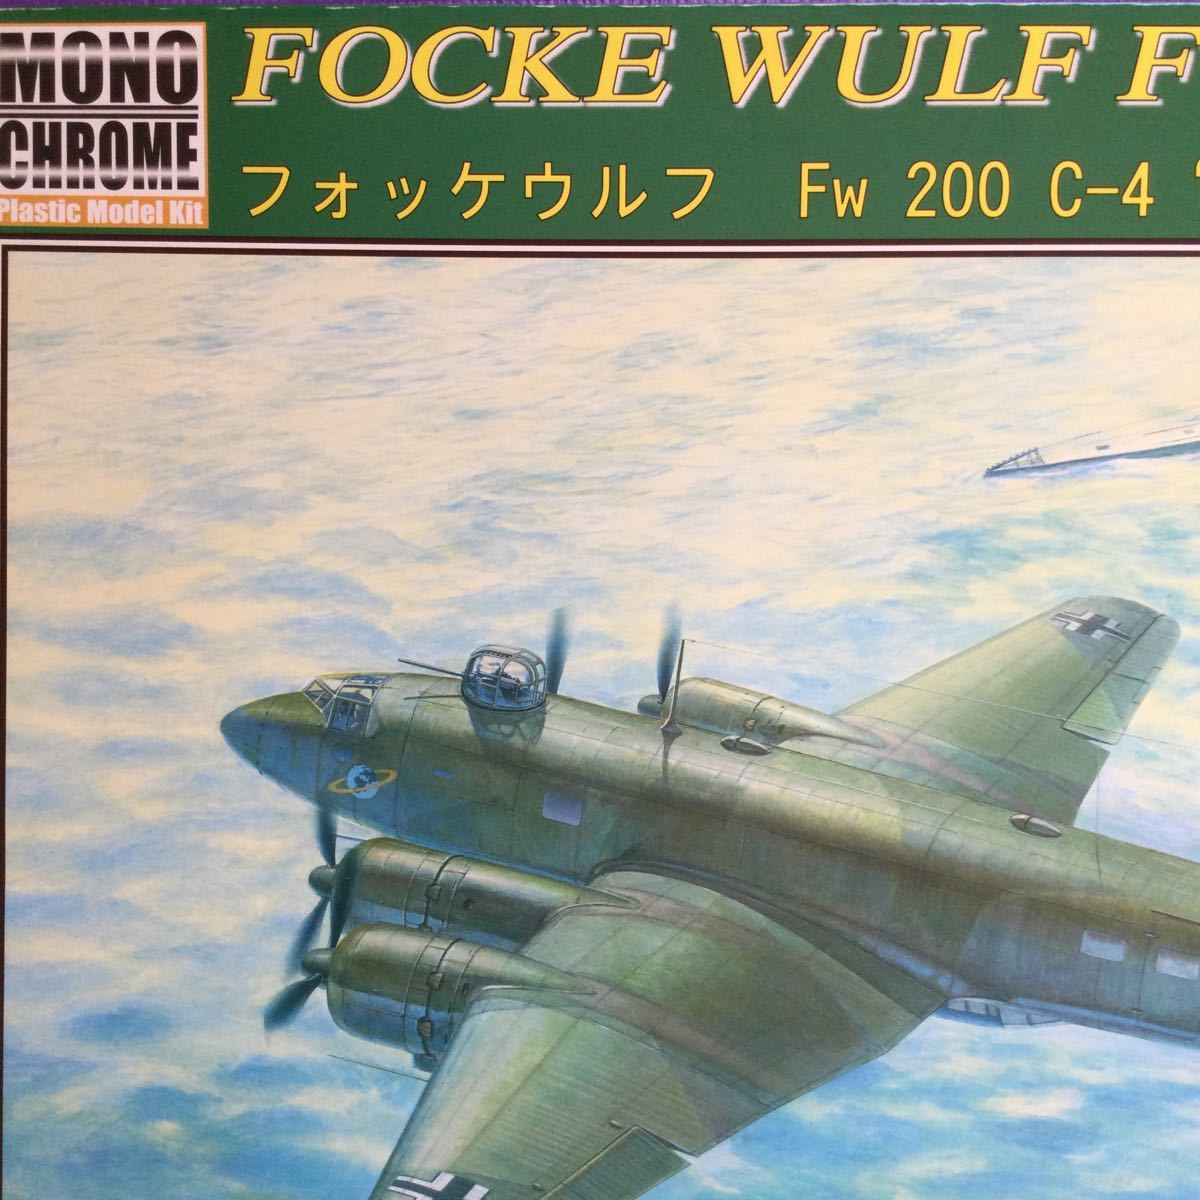  монохромный -m1/48 Focke-Wulf Fw200 C-4 Condor Германия ВВС . сверху .... машина не собран нераспечатанный распроданный редкий товар 